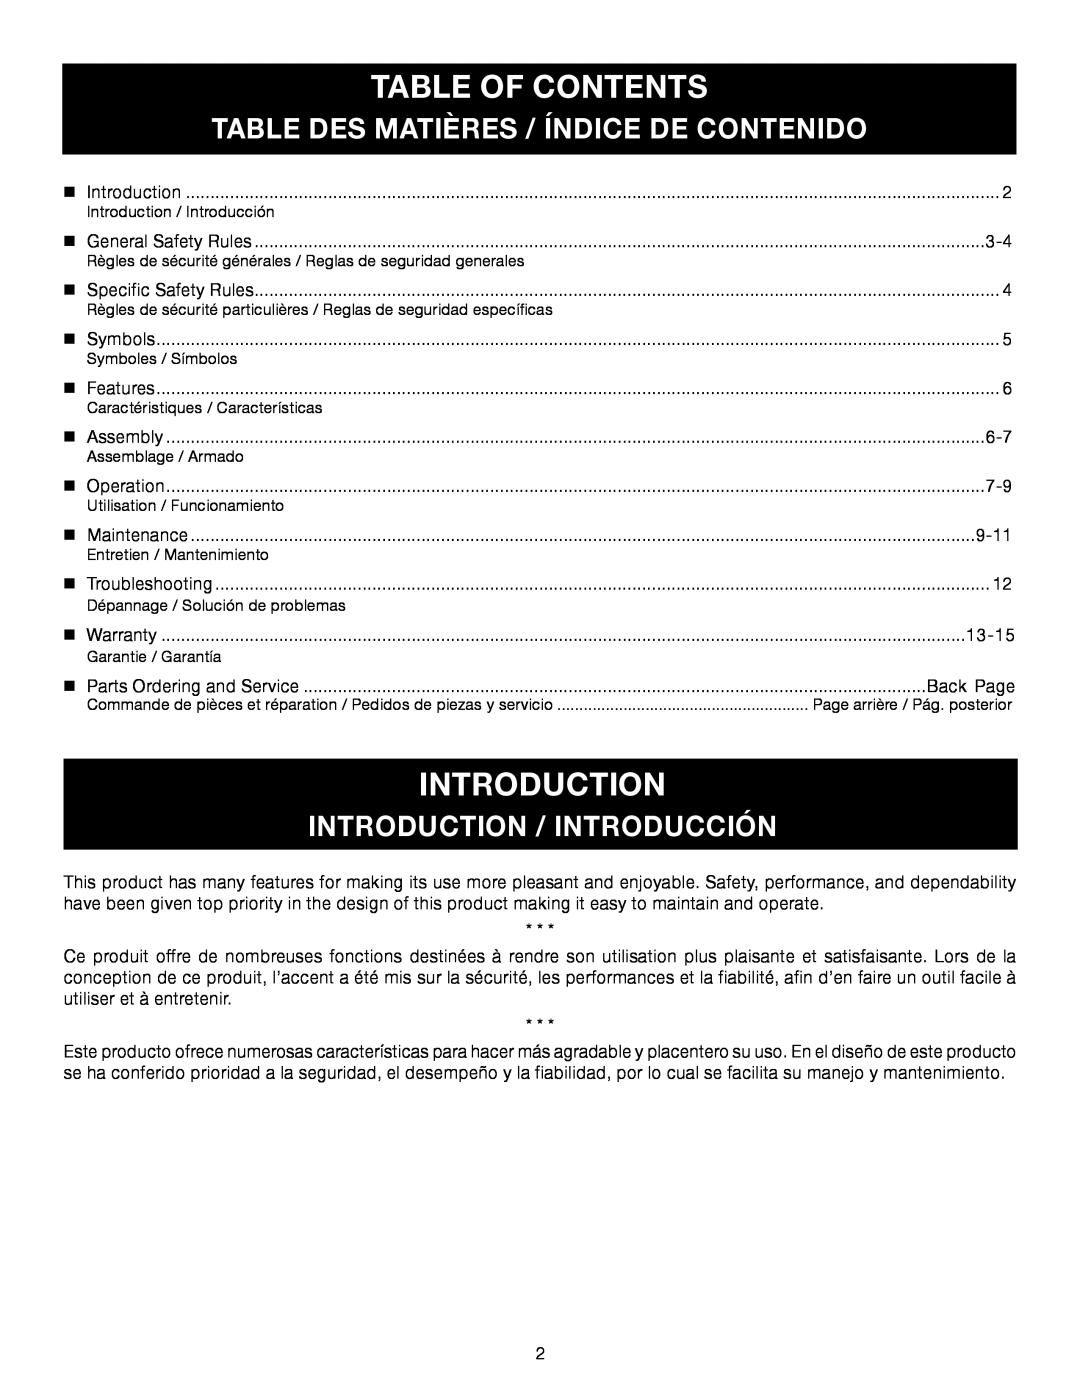 Ryobi RY34001 Table Of Contents, Table Des Matières / Índice De Contenido, Introduction / Introducción 